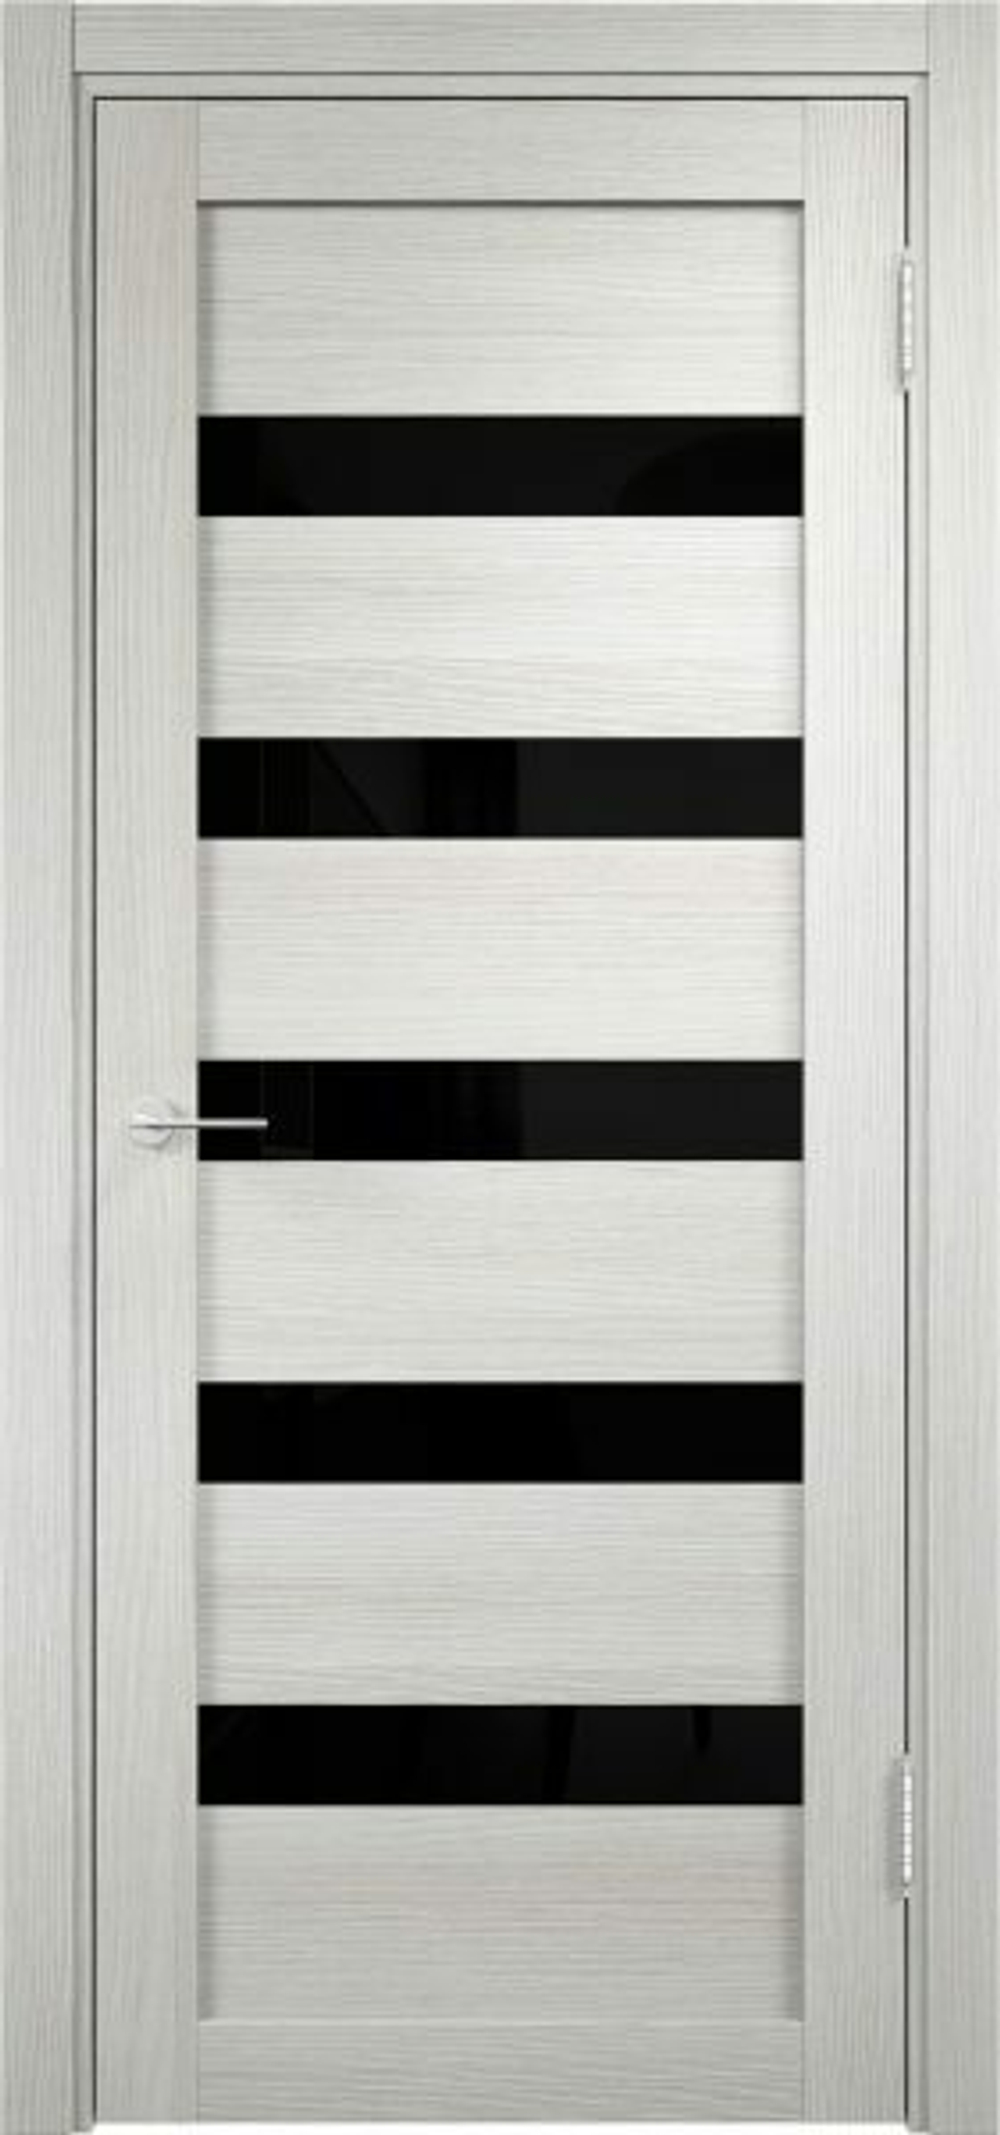 Межкомнатная дверь с покрытием 3d Граф Мюнхен -03 цвет:Слоновая кость (черное стекло)